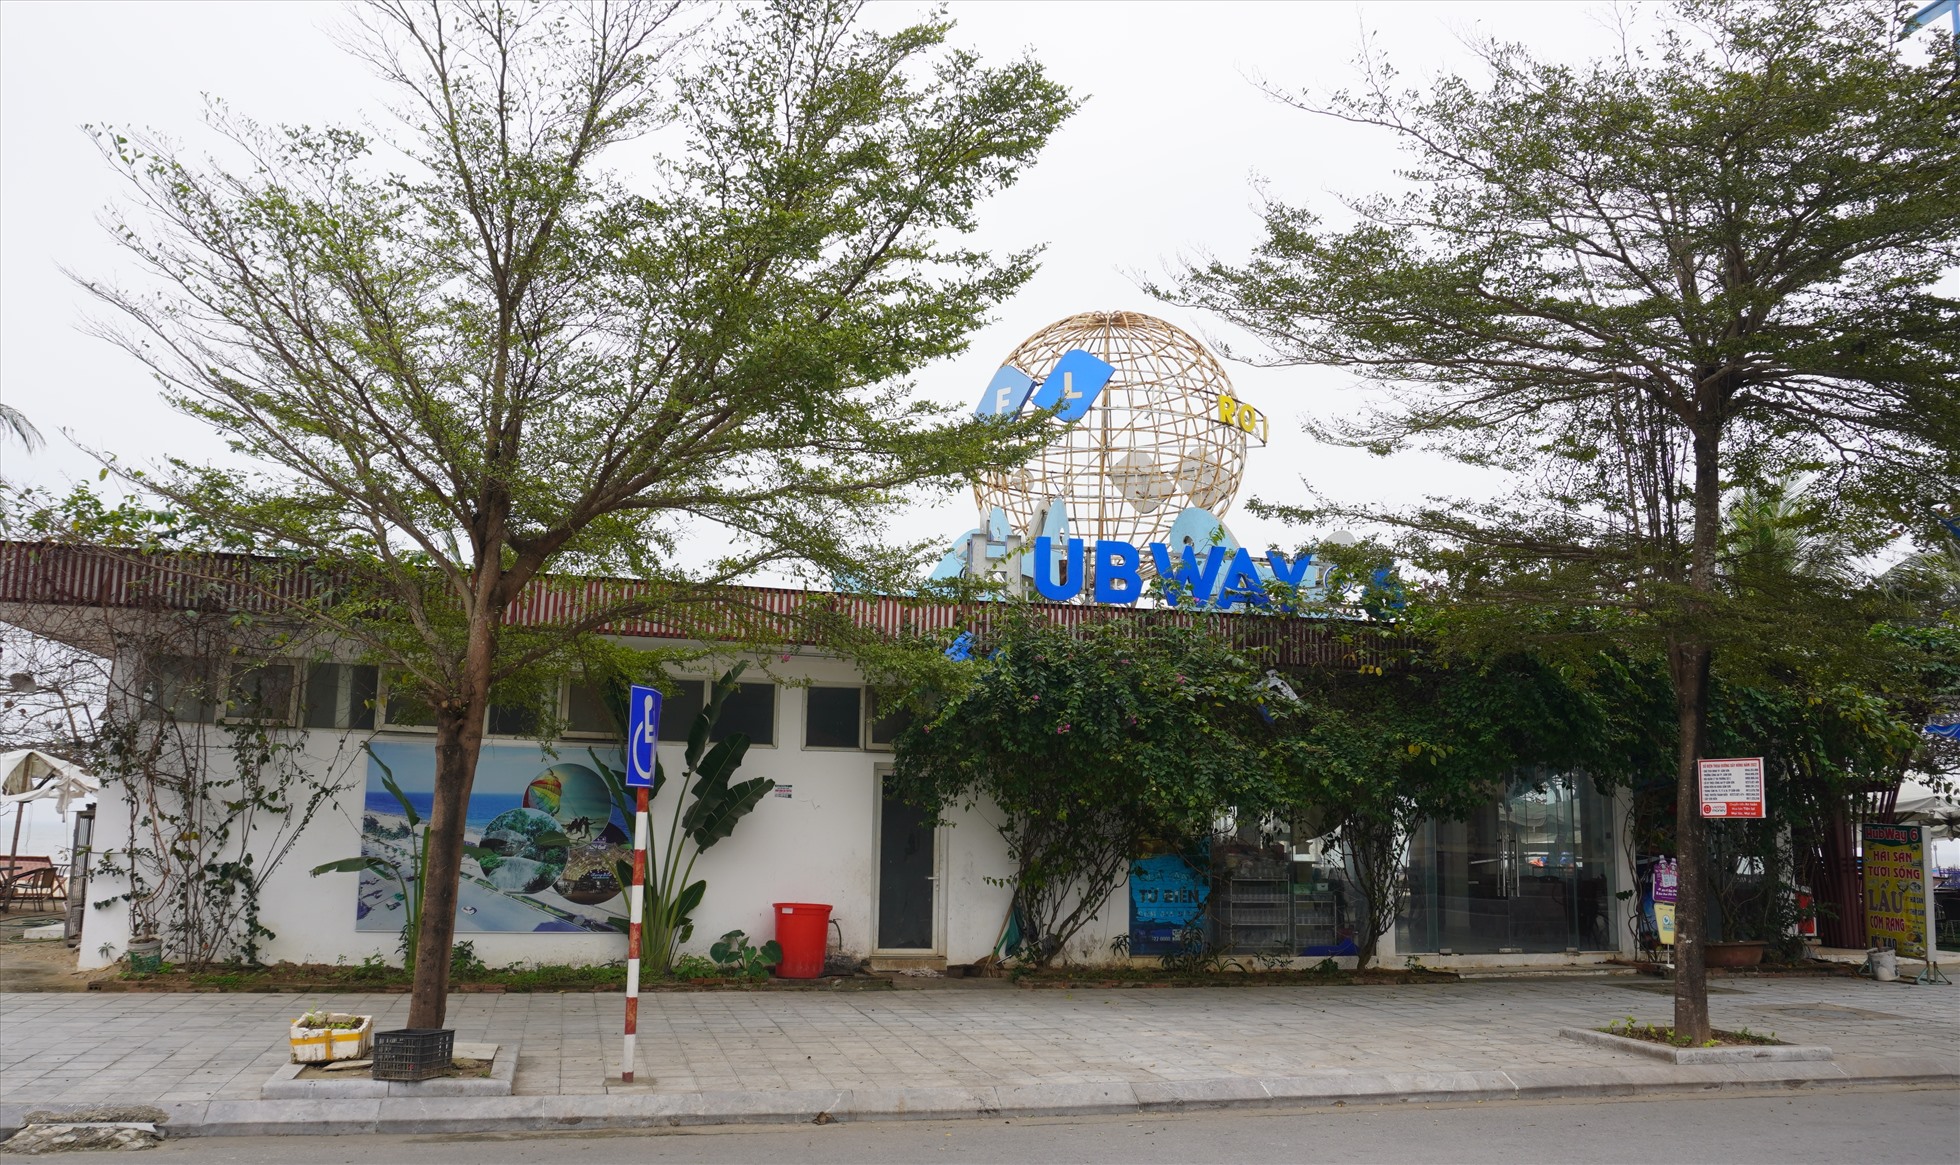 Theo ghi nhận dọc bãi biển Sầm Sơn, các công trình, Hubway của Tập đoàn FLC hiện nay đã cho nhiều hộ dân thuê lại để kinh doanh buôn bán. Ảnh: Quách Du